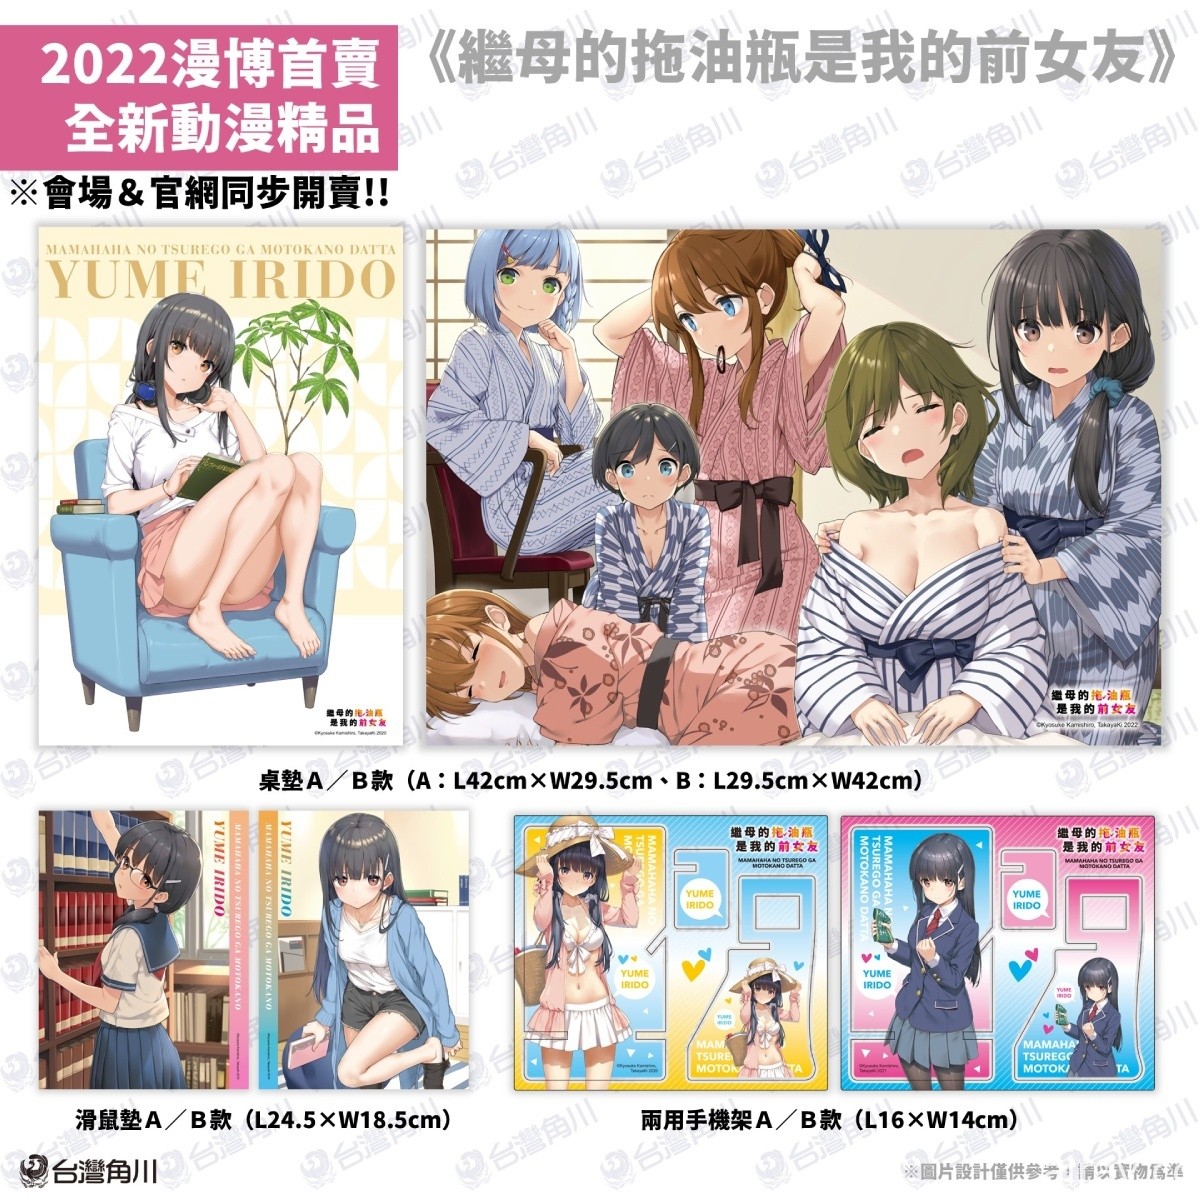 【漫博 22】台湾角川公开“2022 漫画博览会”动漫周边商品资讯